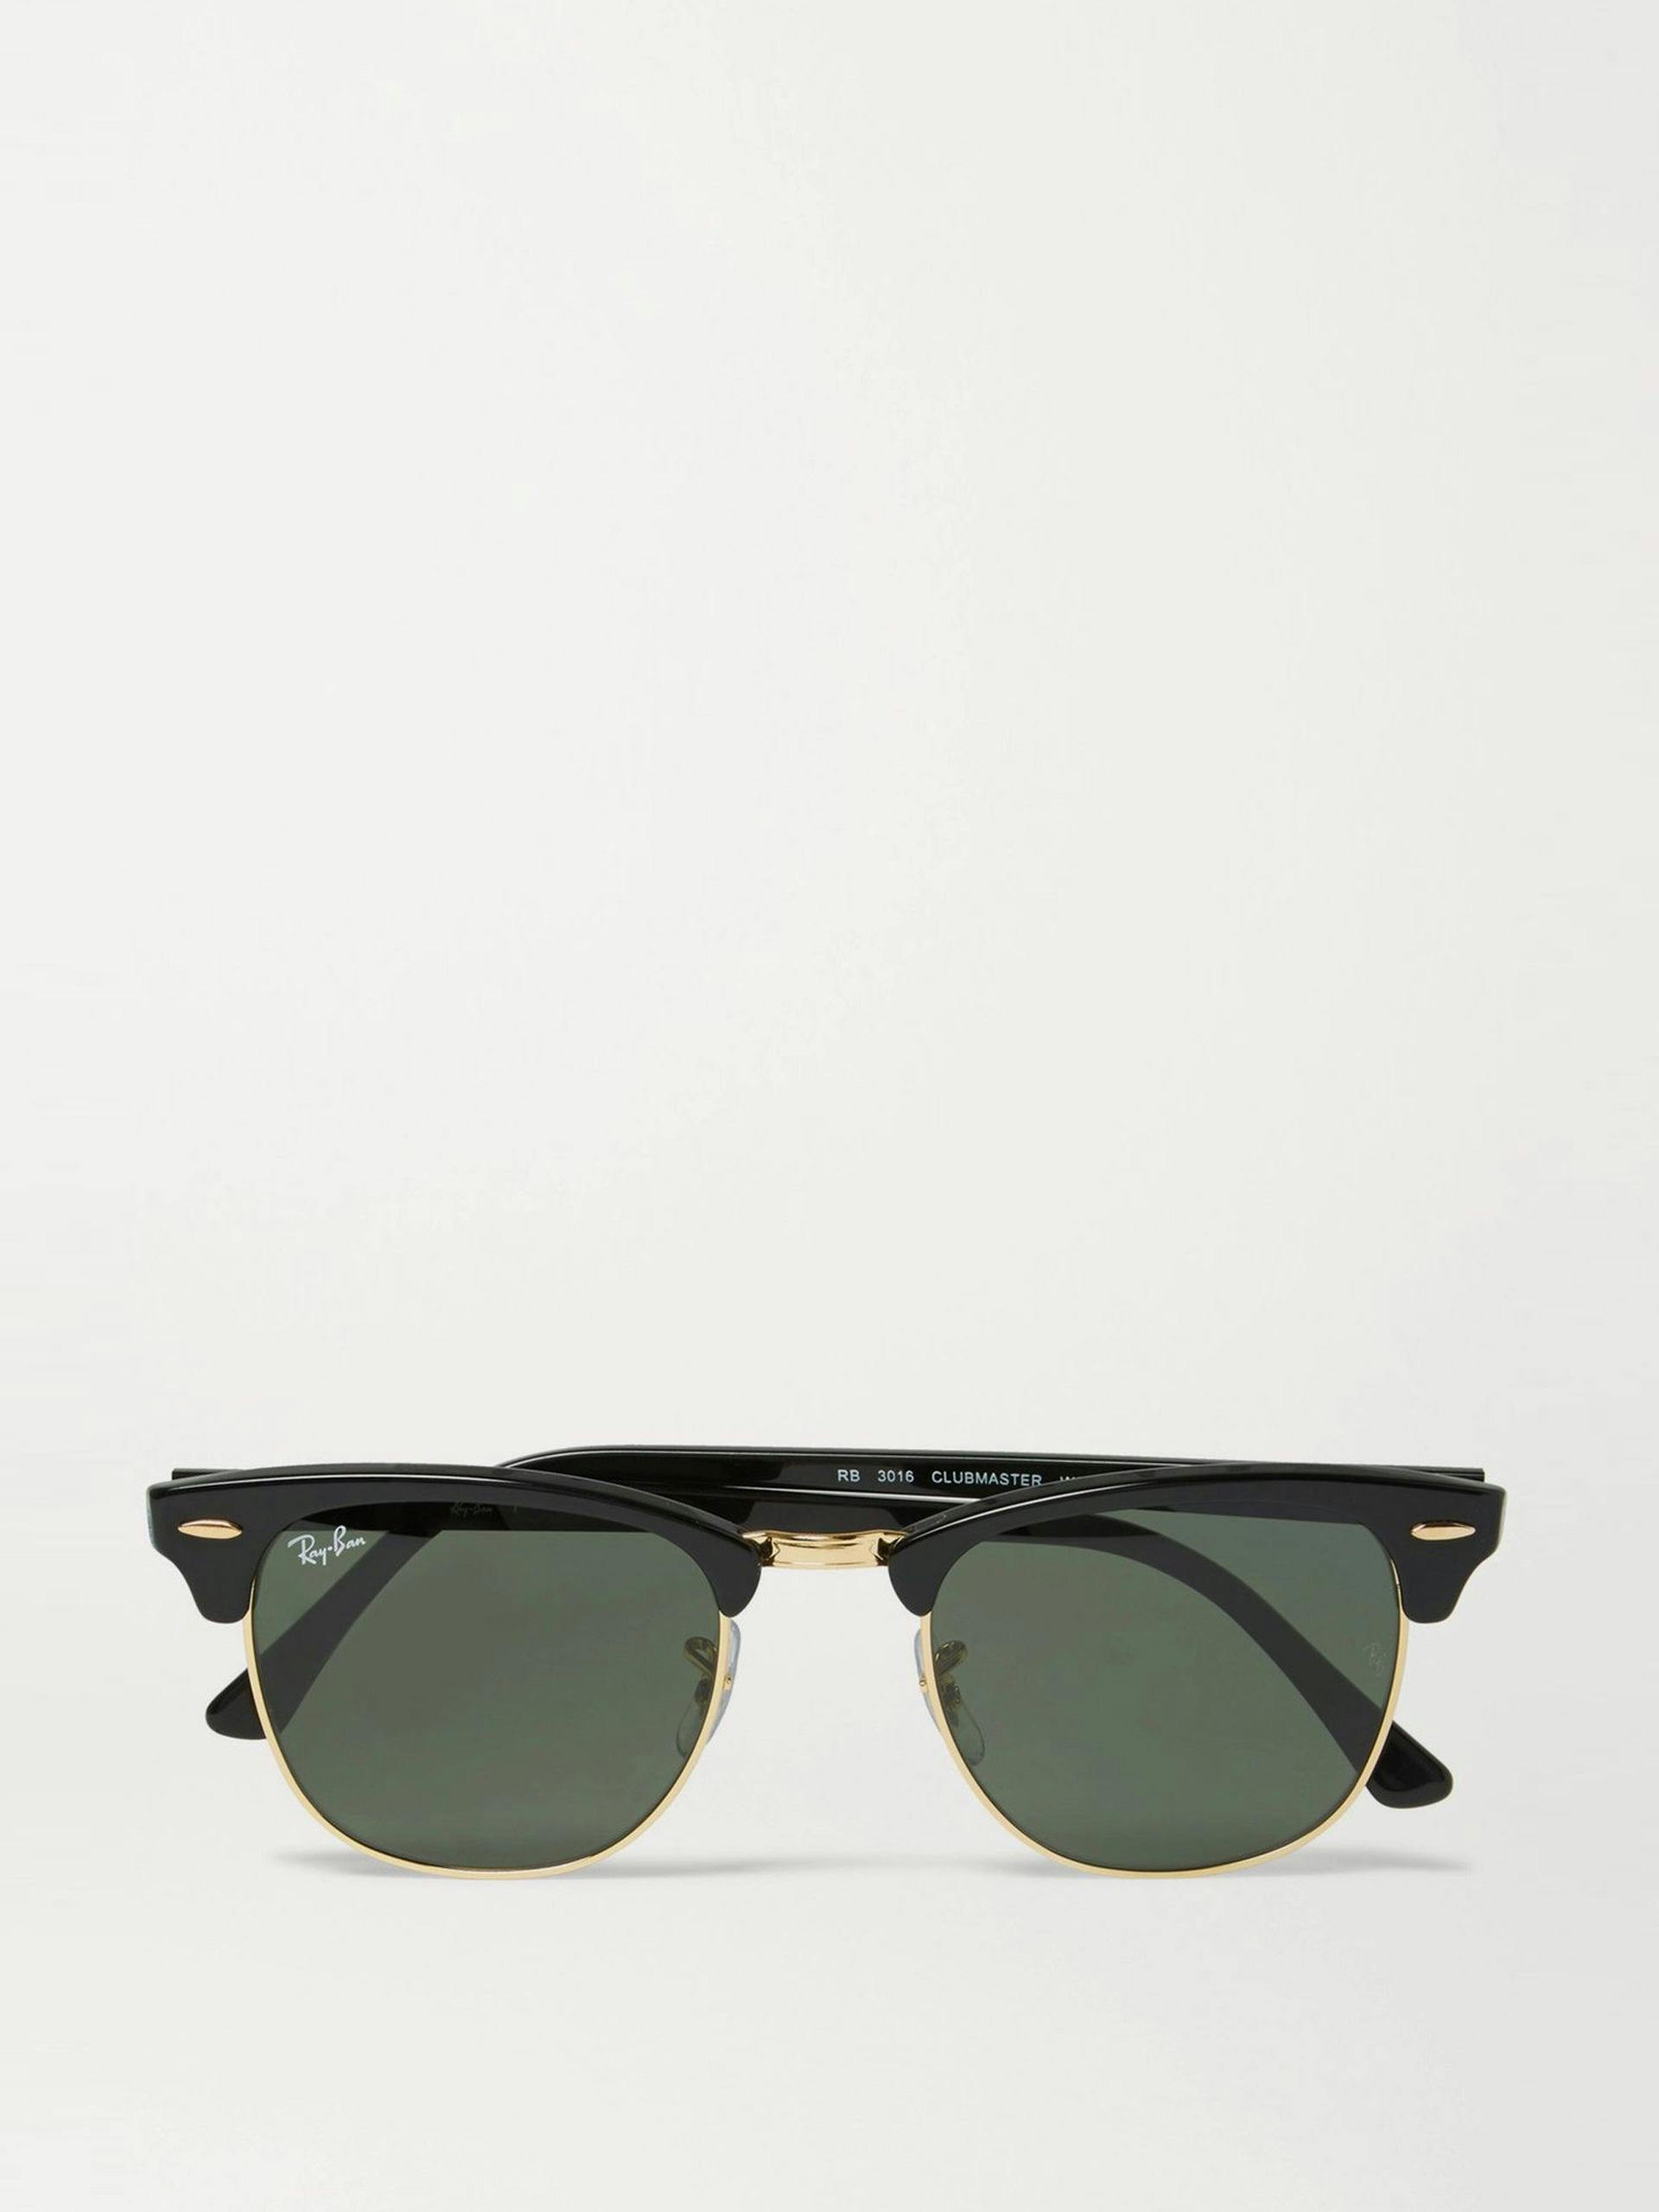 Black acetate Clubmaster sunglasses